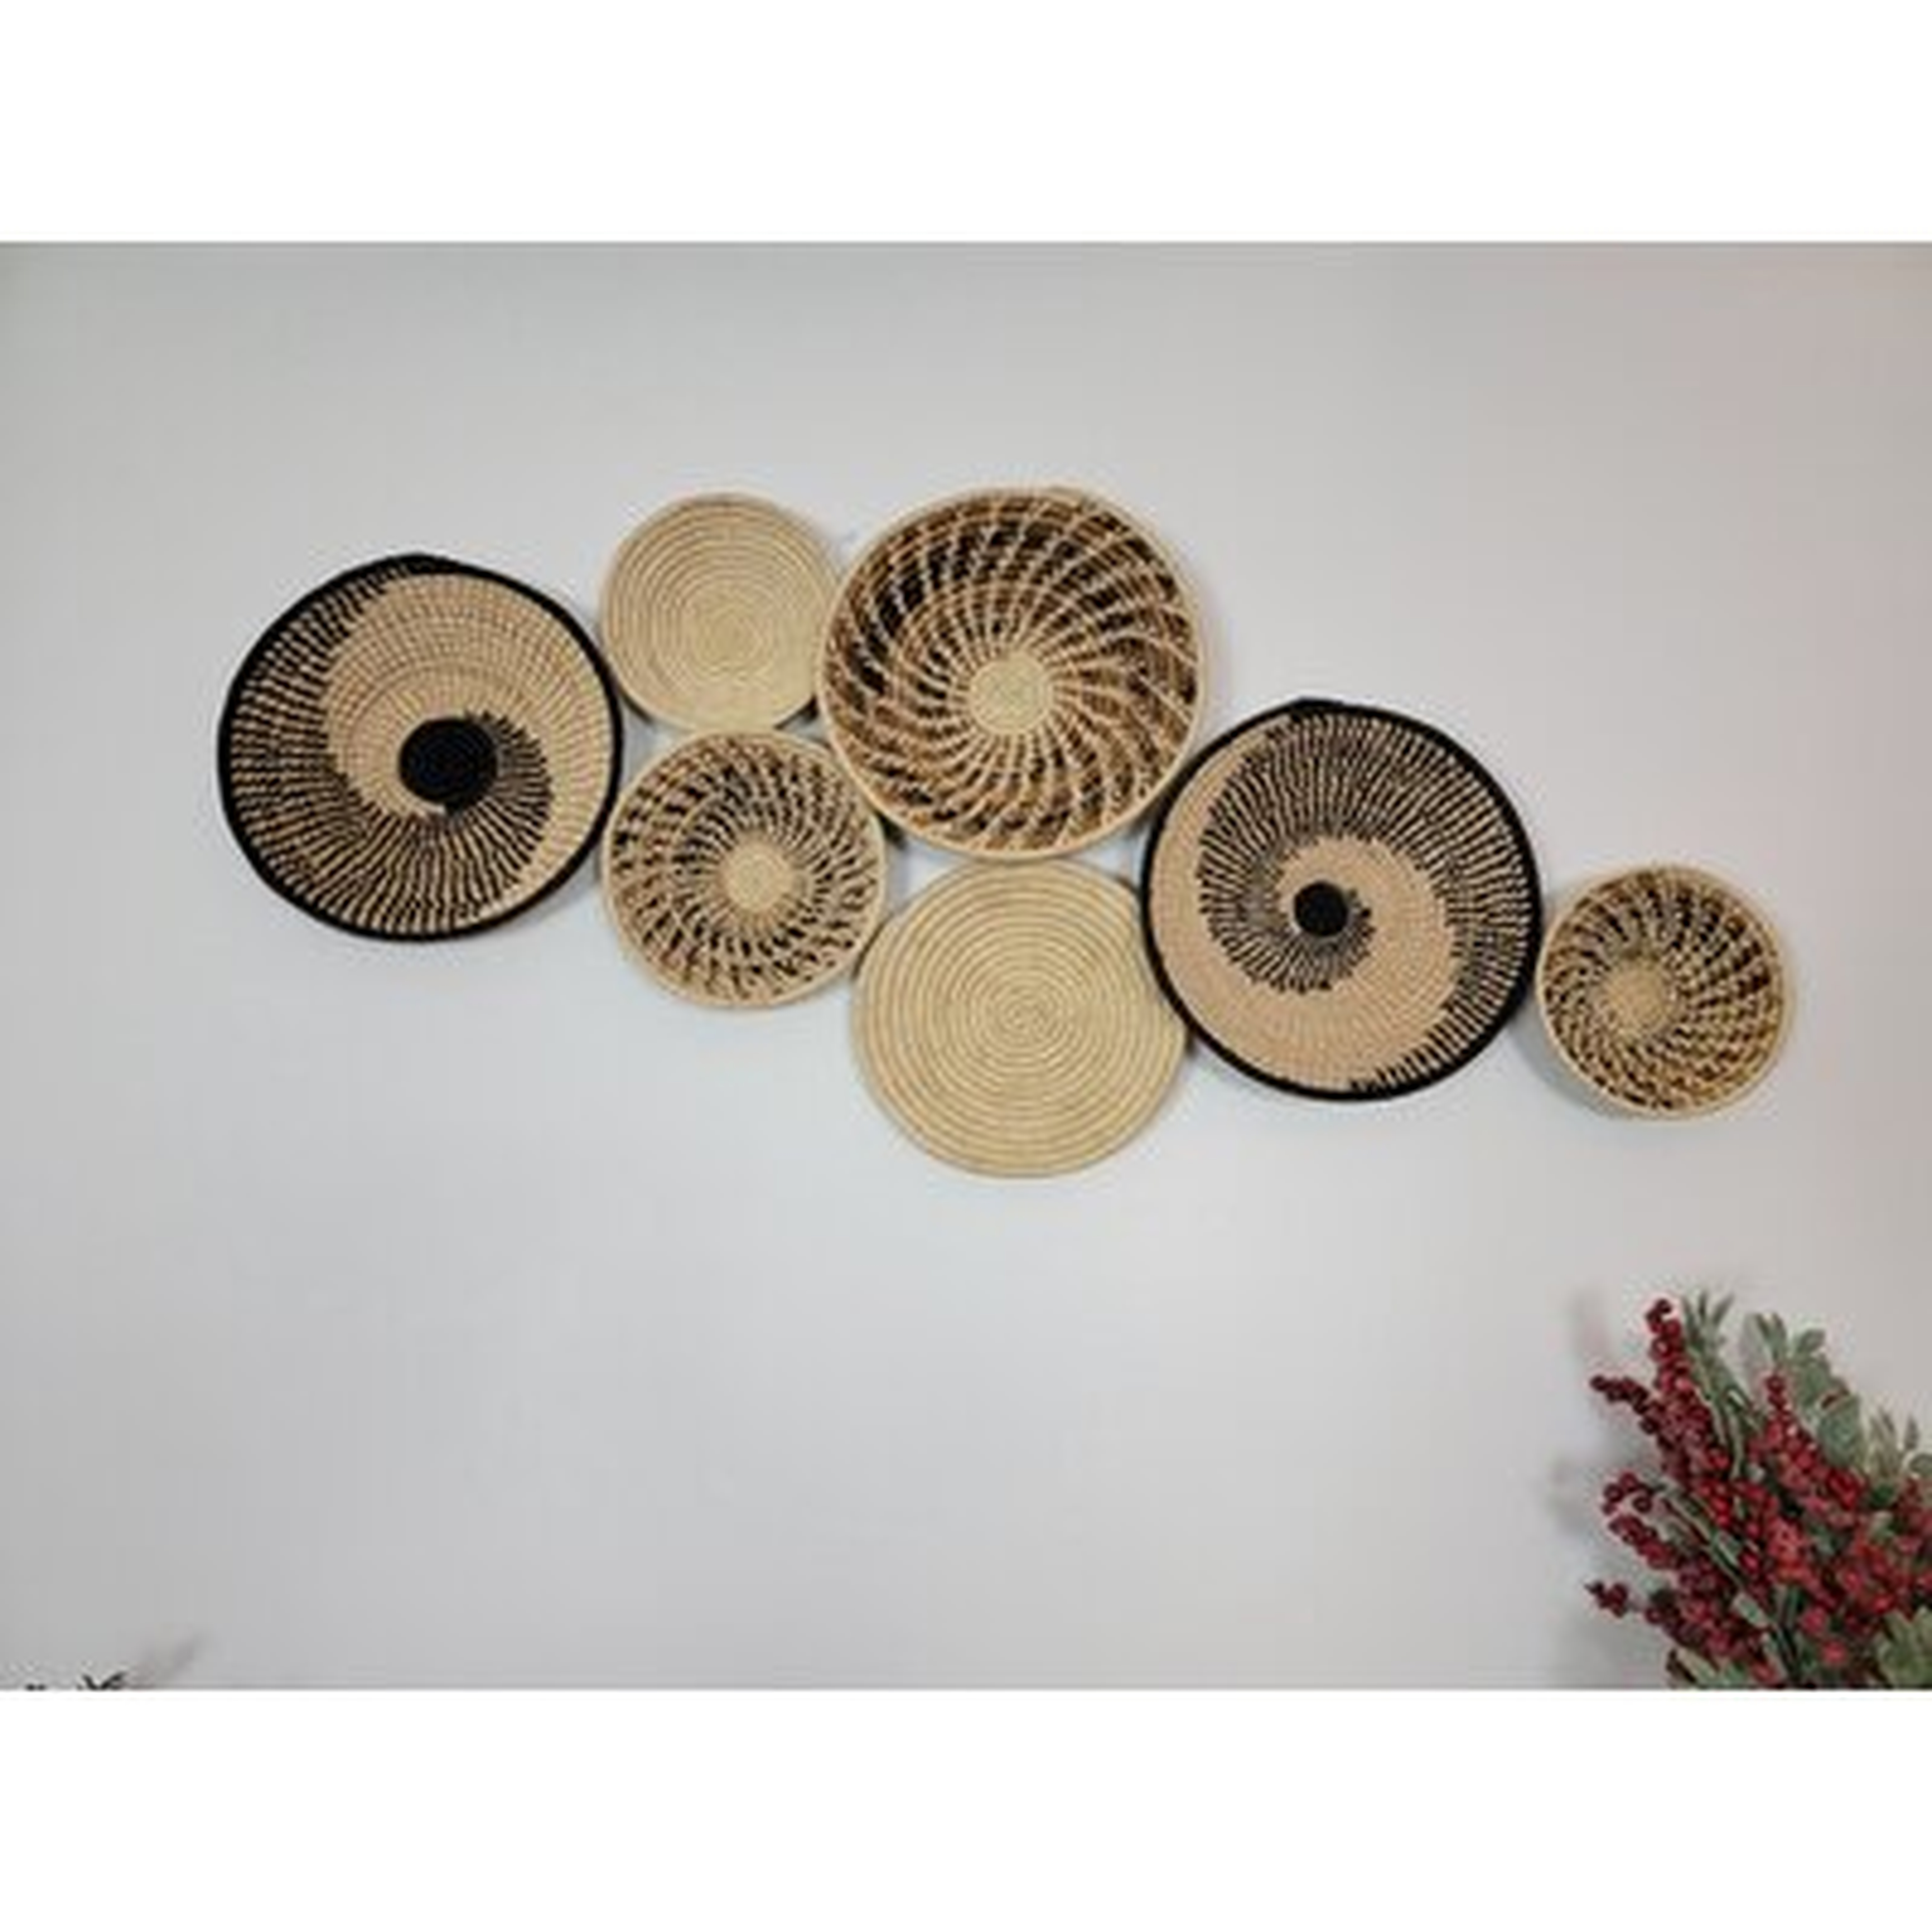 7 Piece African Baskets Wall Décor Set - Wayfair